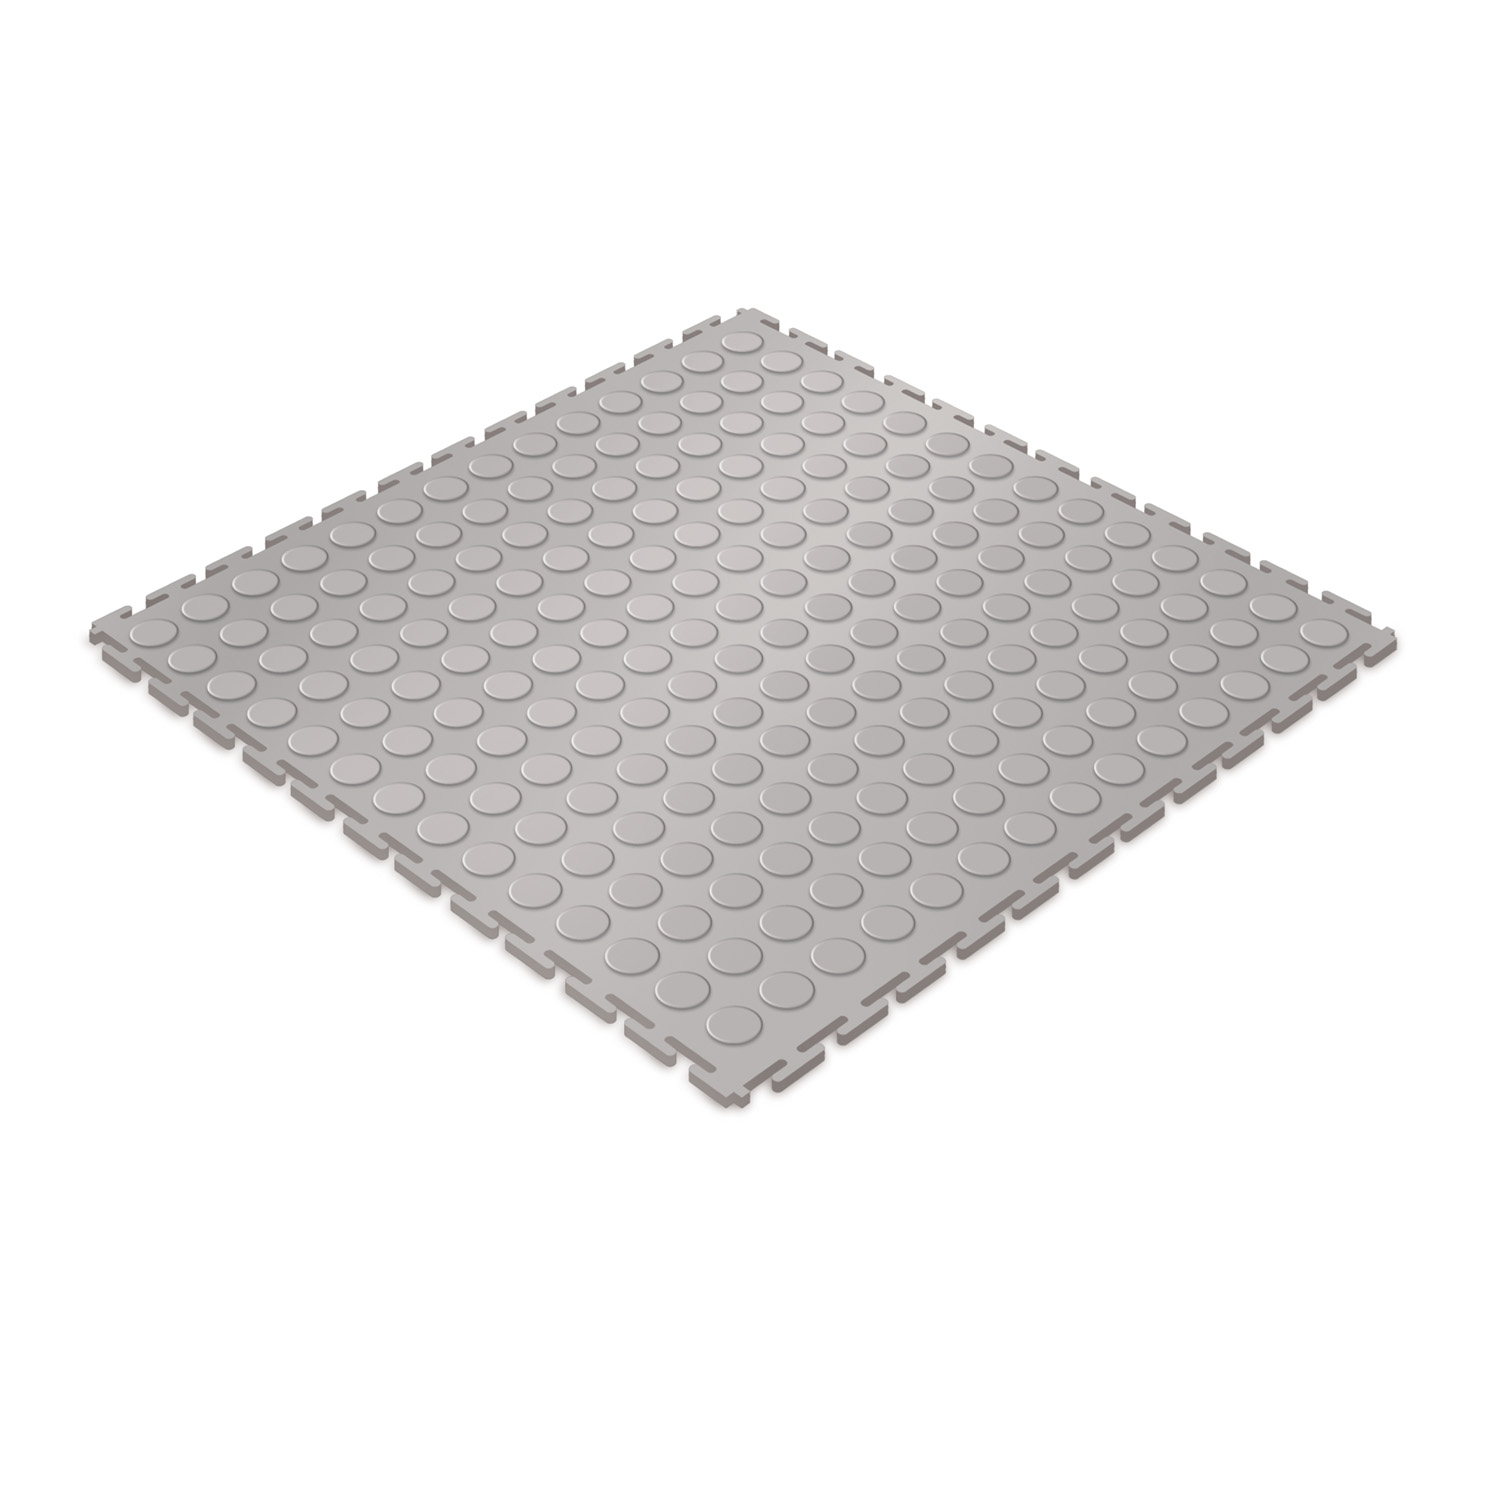 Heavy-duty floor tile (light grey/studded)